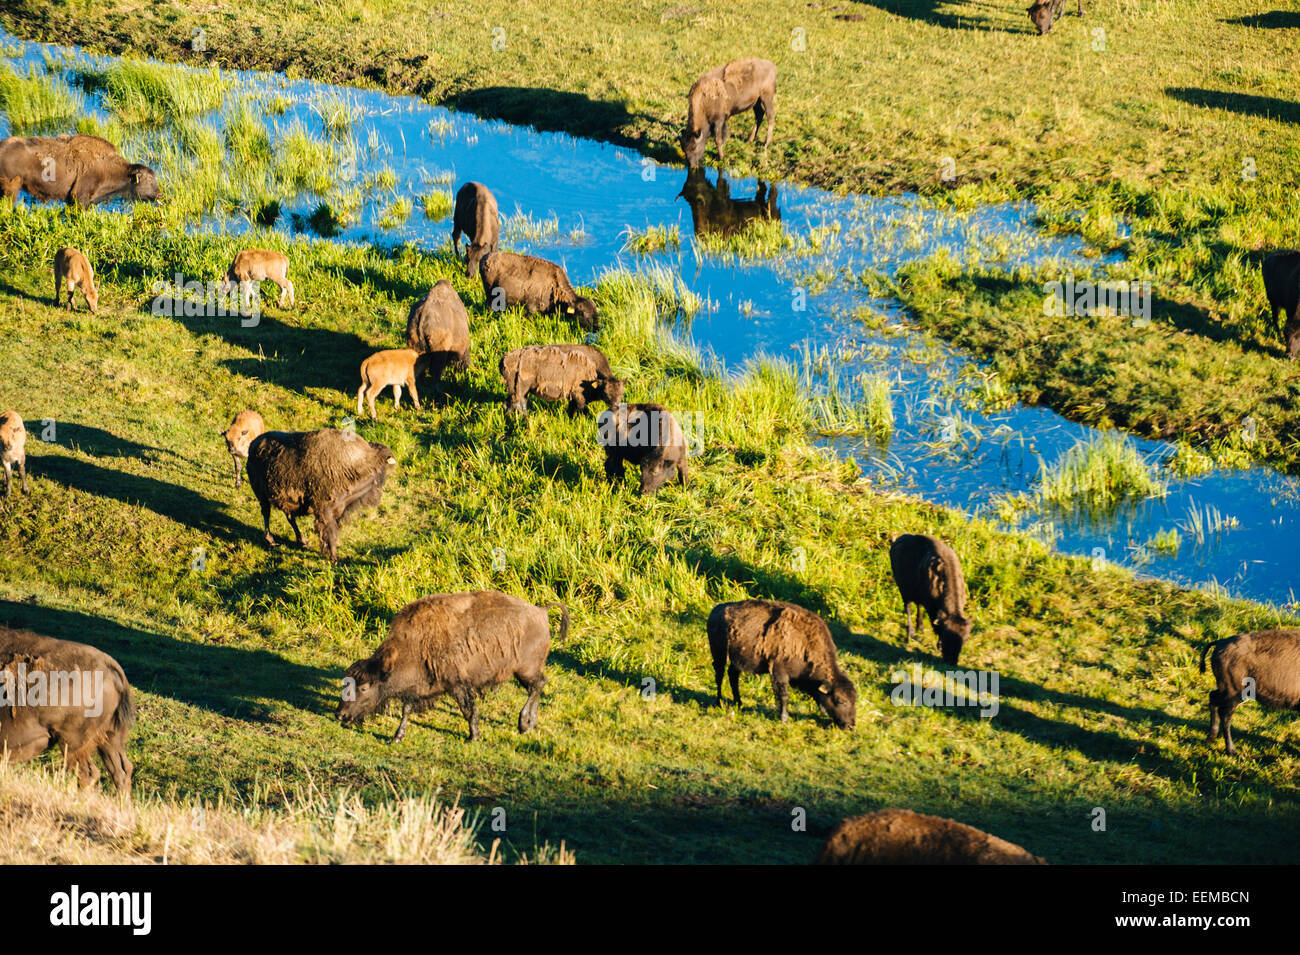 Buffalo herd grazing in grassy field near creek Stock Photo